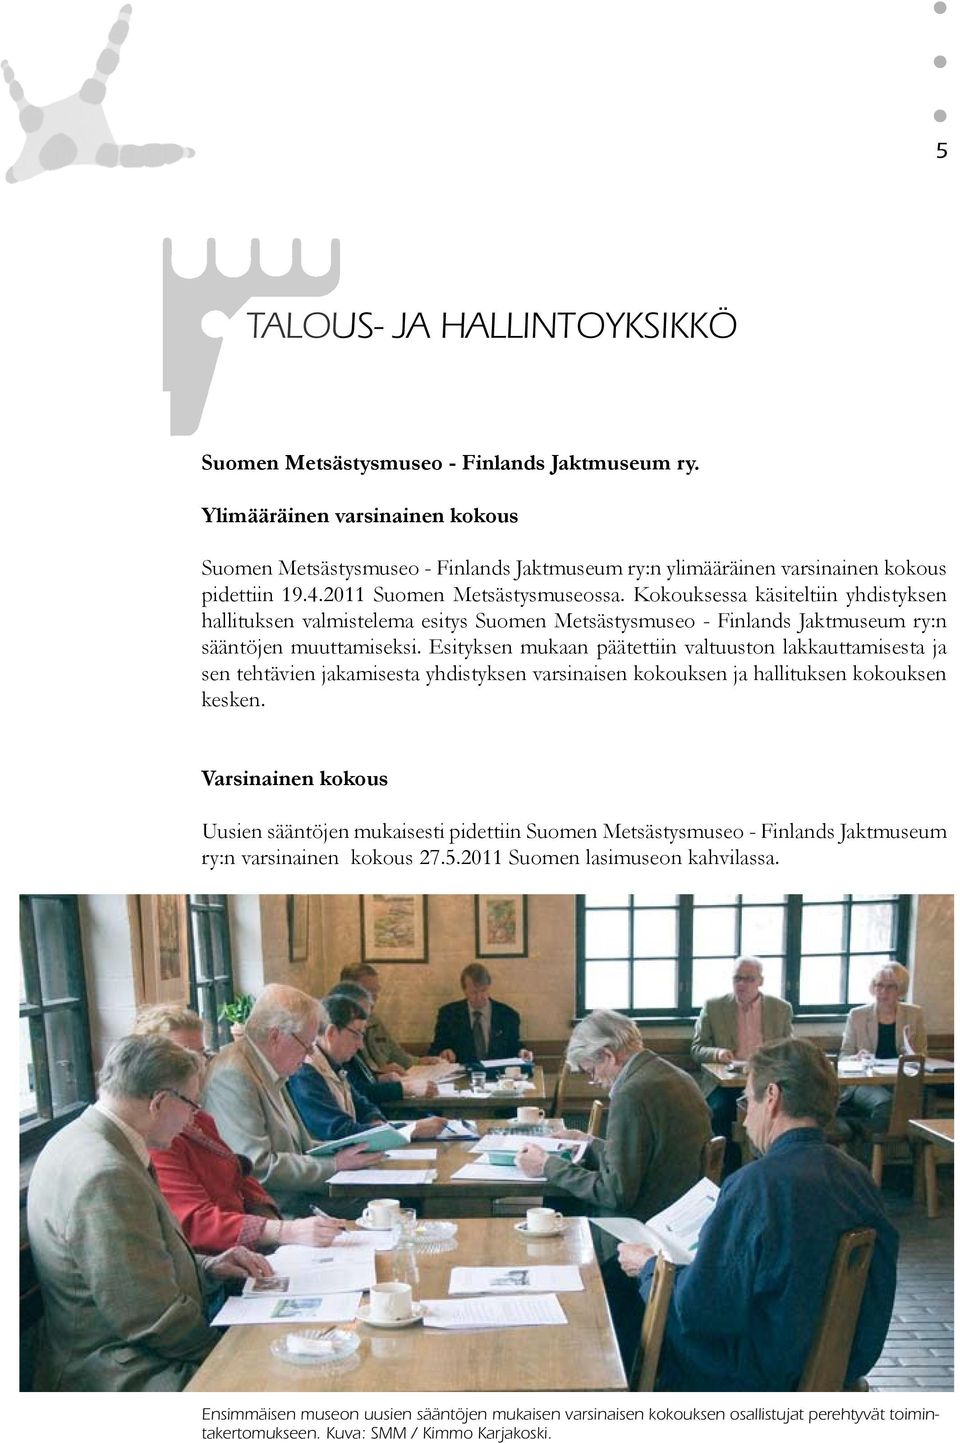 Kokouksessa käsiteltiin yhdistyksen hallituksen valmistelema esitys Suomen Metsästysmuseo - Finlands Jaktmuseum ry:n sääntöjen muuttamiseksi.